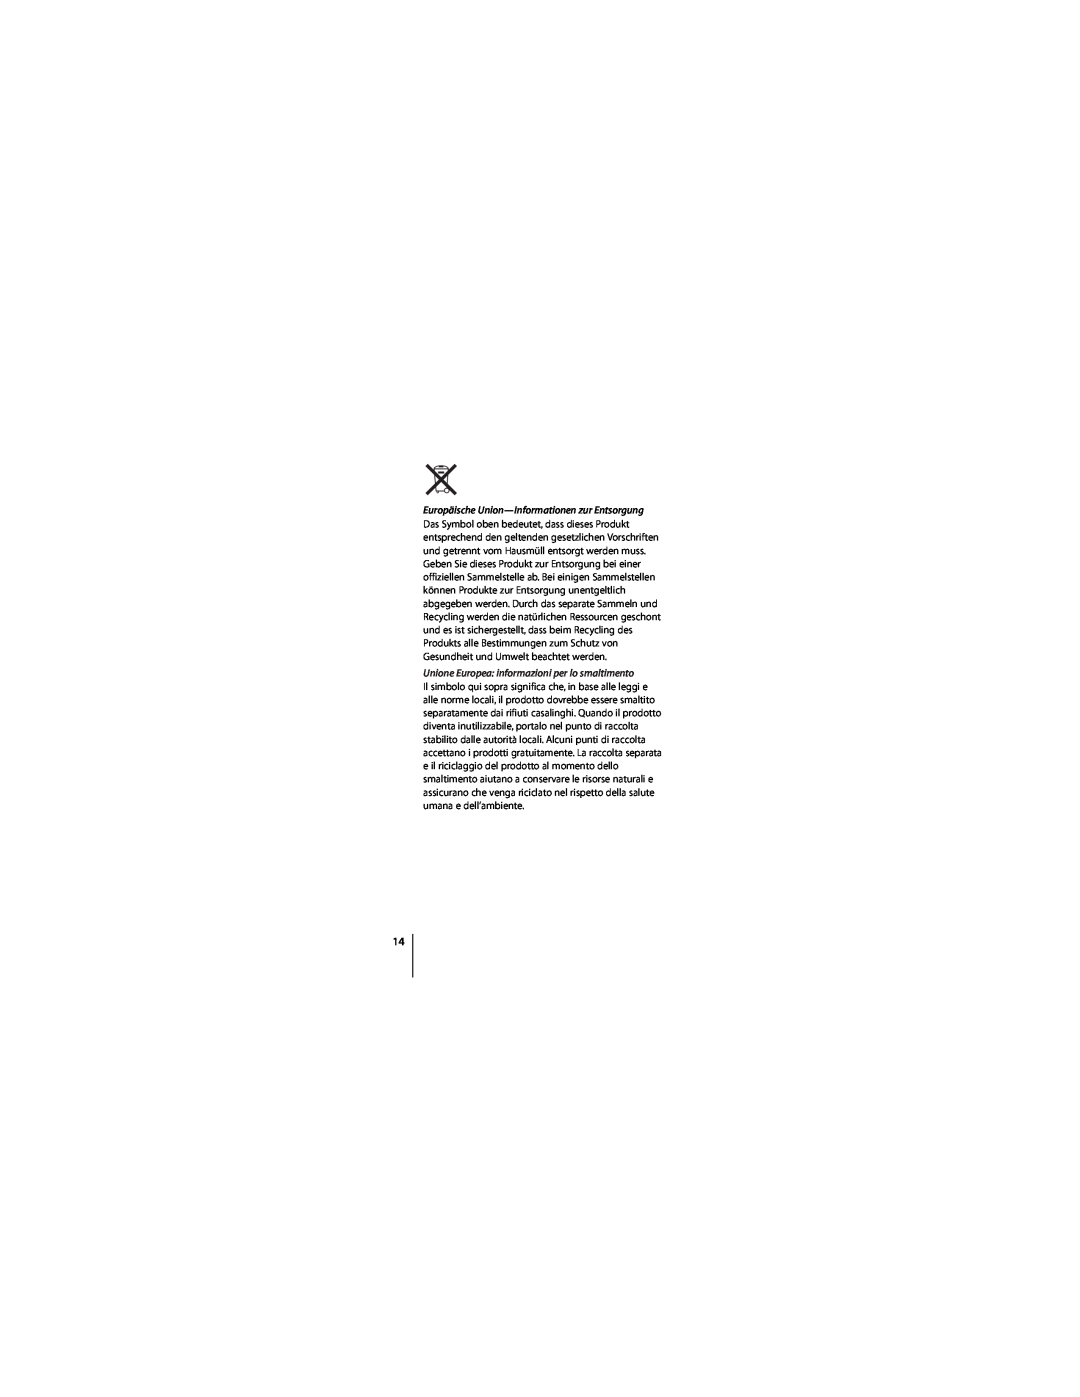 Apple ZM034-4835-A manual Europäische Union-Informationen zur Entsorgung, Unione Europea informazioni per lo smaltimento 